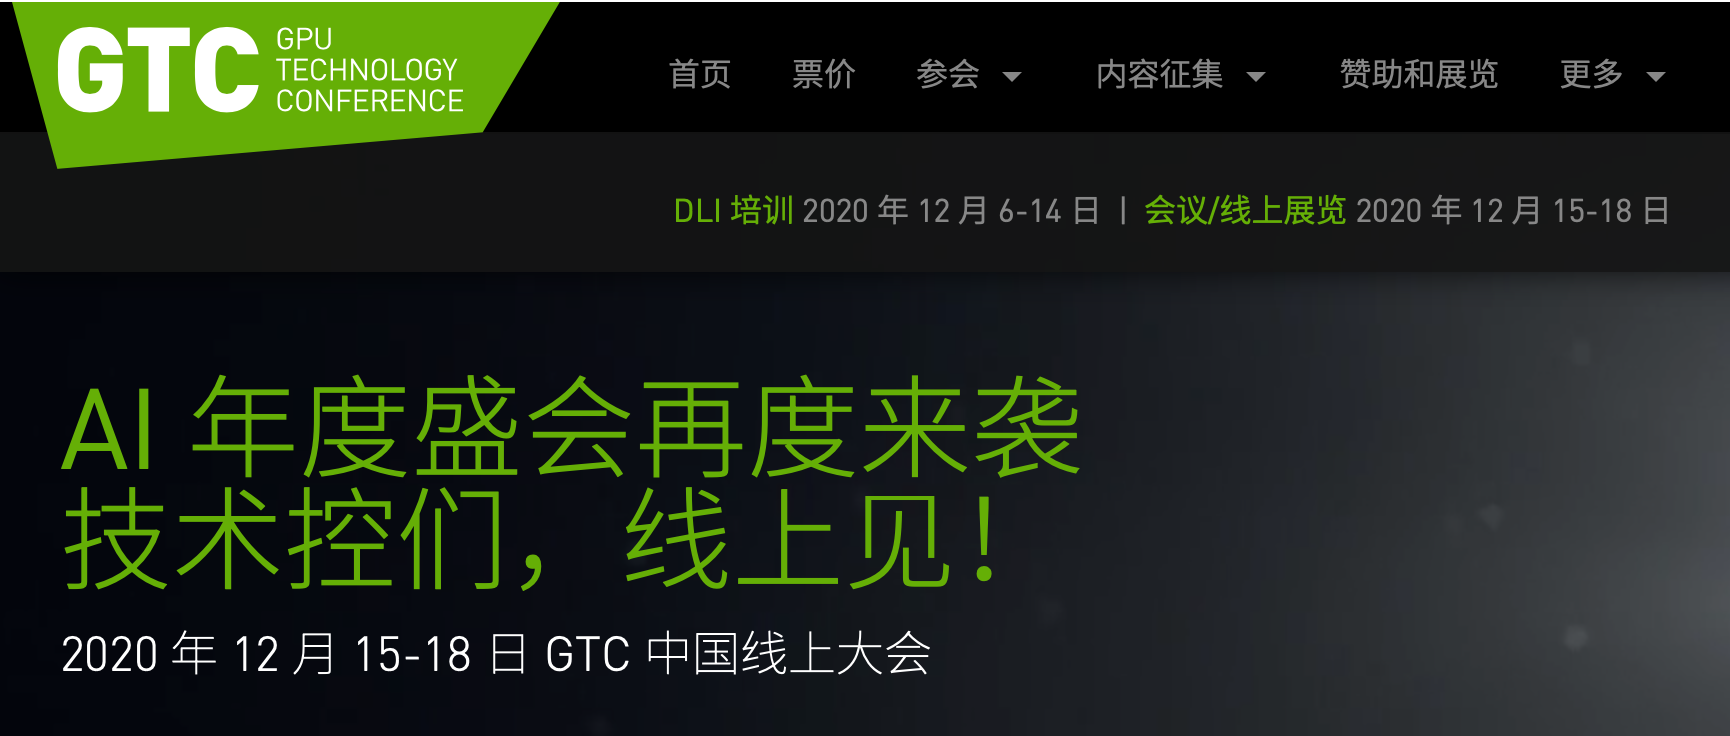 2020年12月NVIDIA GTC (GPU 技术大会)